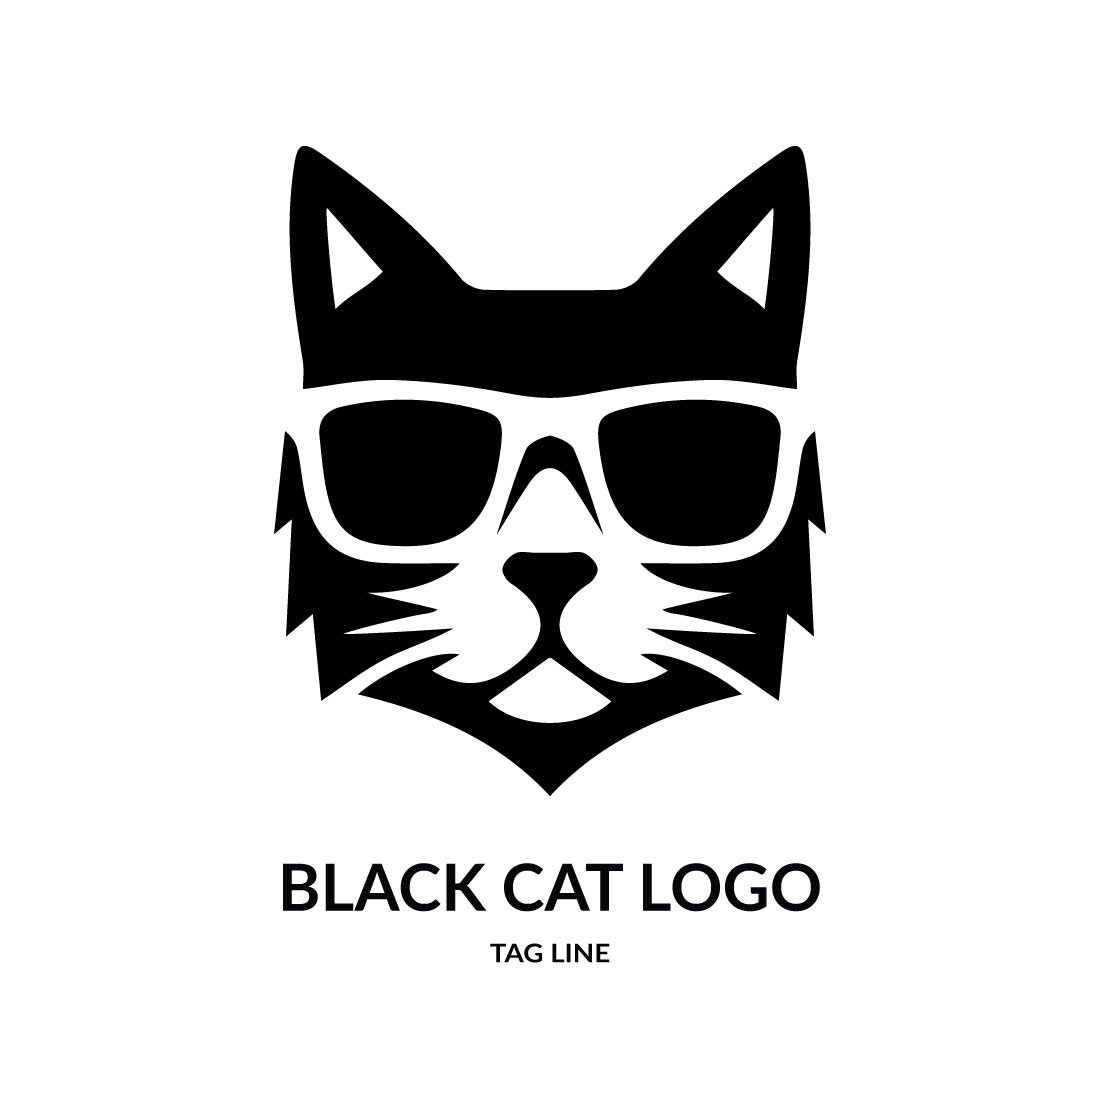 Black Cat Logo Vector Art PNG Images | Free Download On Pngtree